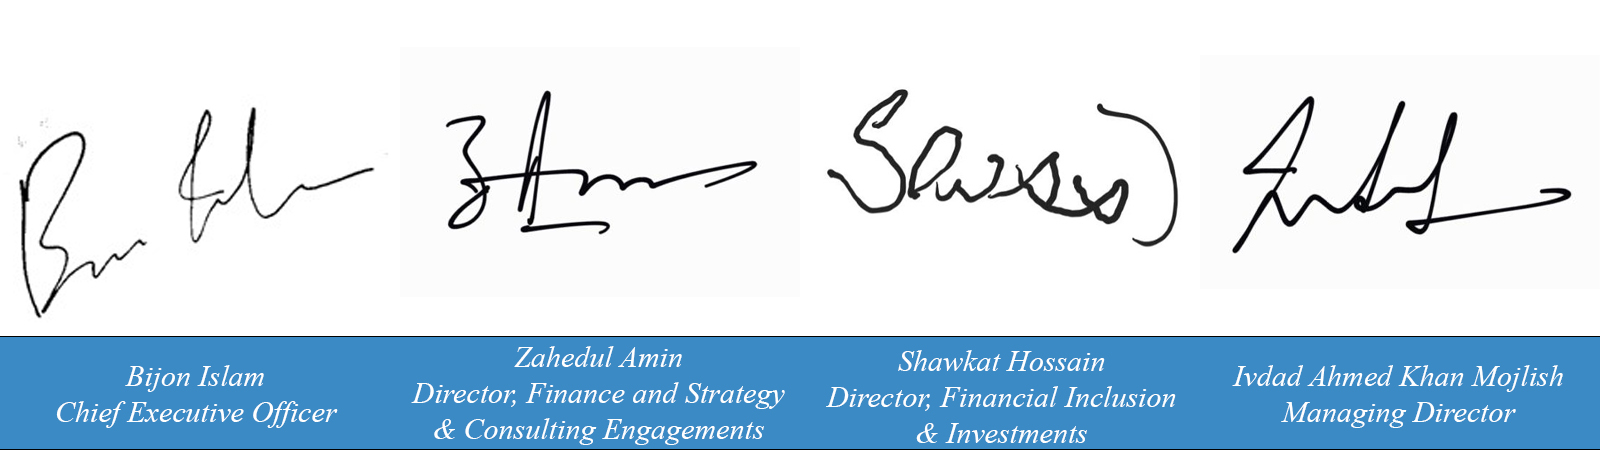 director-signatures-collage